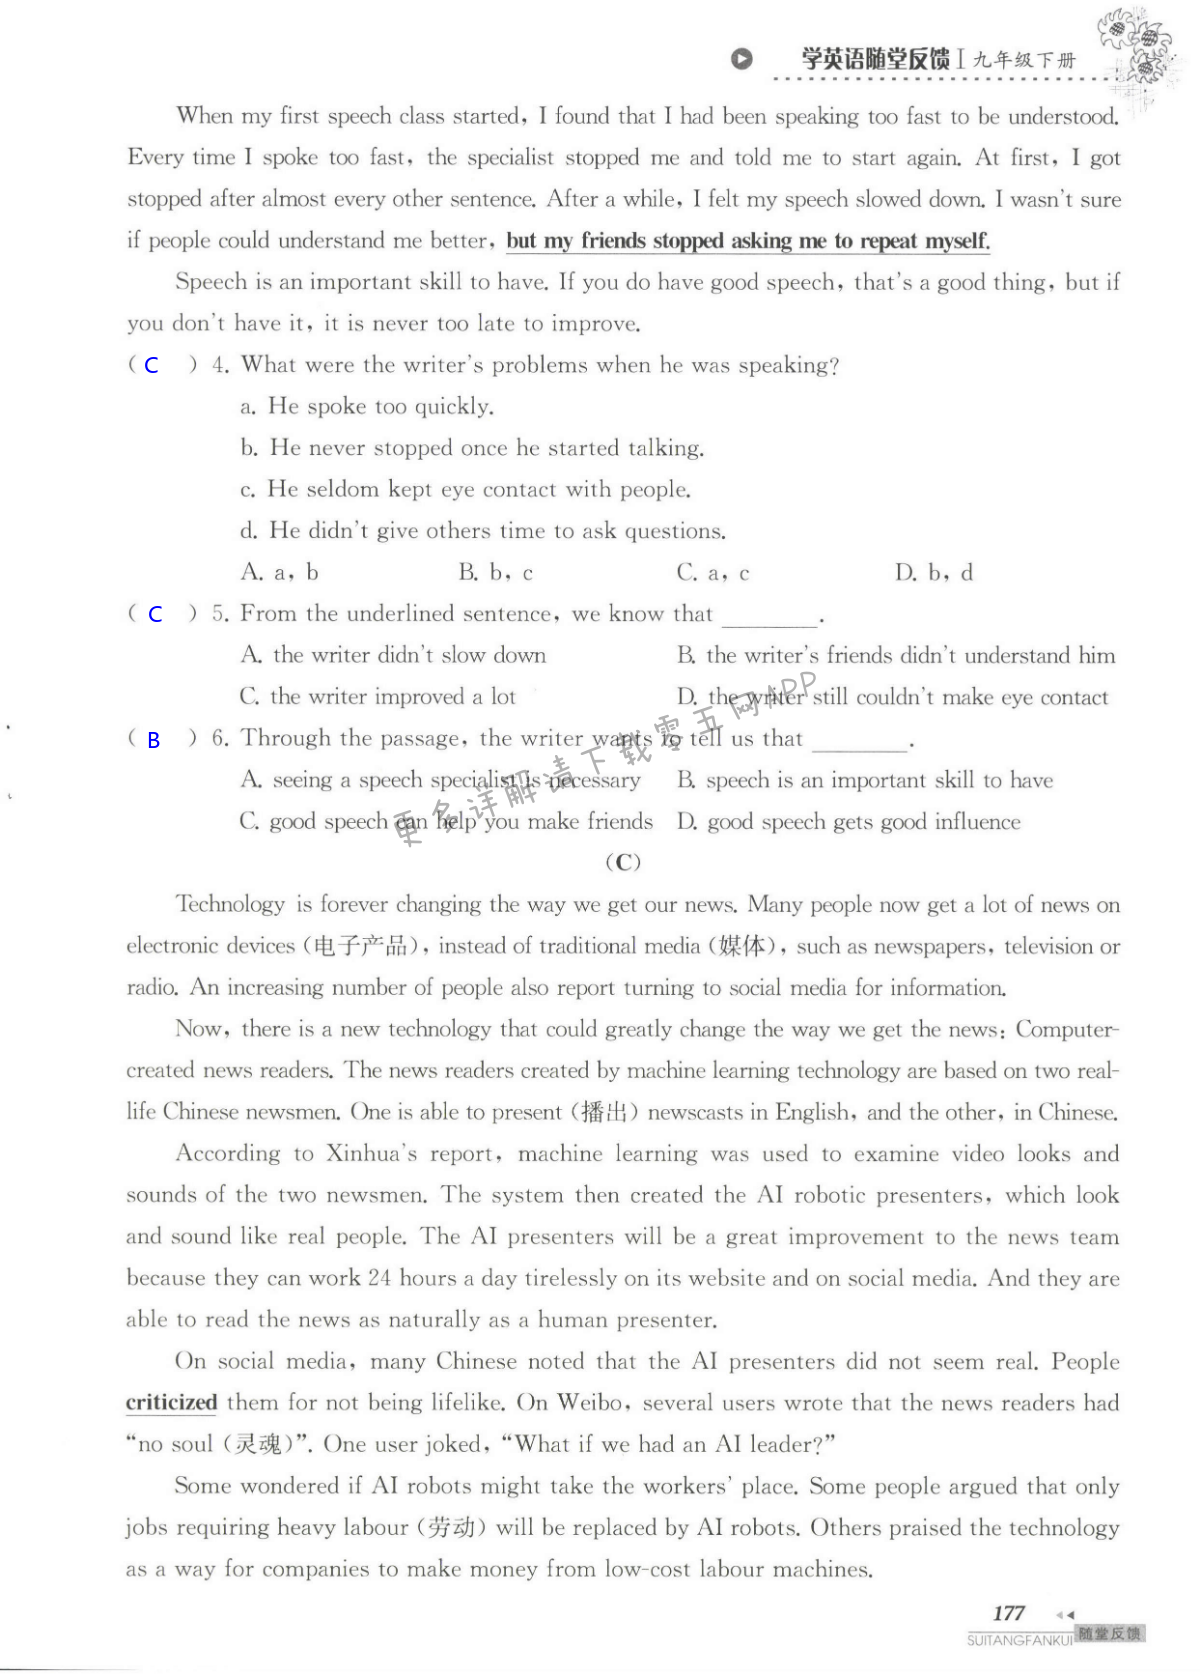 单元综合测试卷 Test for Unit 3 of 9B - 第177页